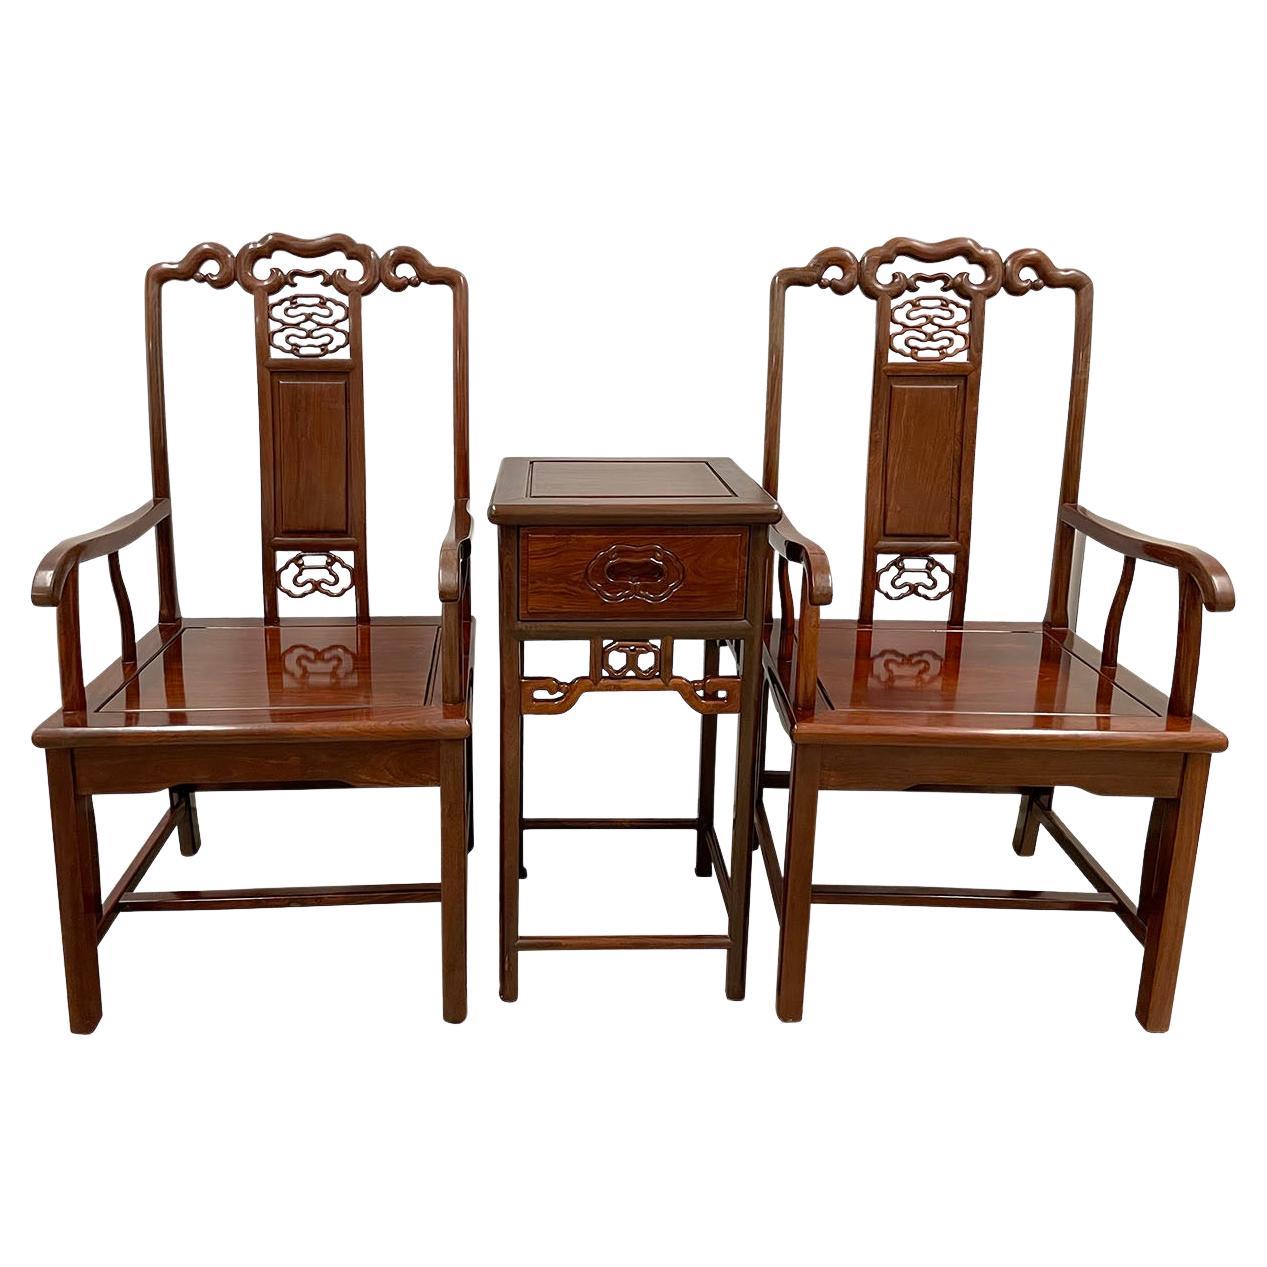 Ce magnifique ensemble de fauteuils chinois vintage à dossier en fer à cheval avec table à thé centrale est fabriqué en bois de rose massif. Très solide et robuste. Il présente un magnifique travail de sculpture sur le dos et sur le devant. Cet